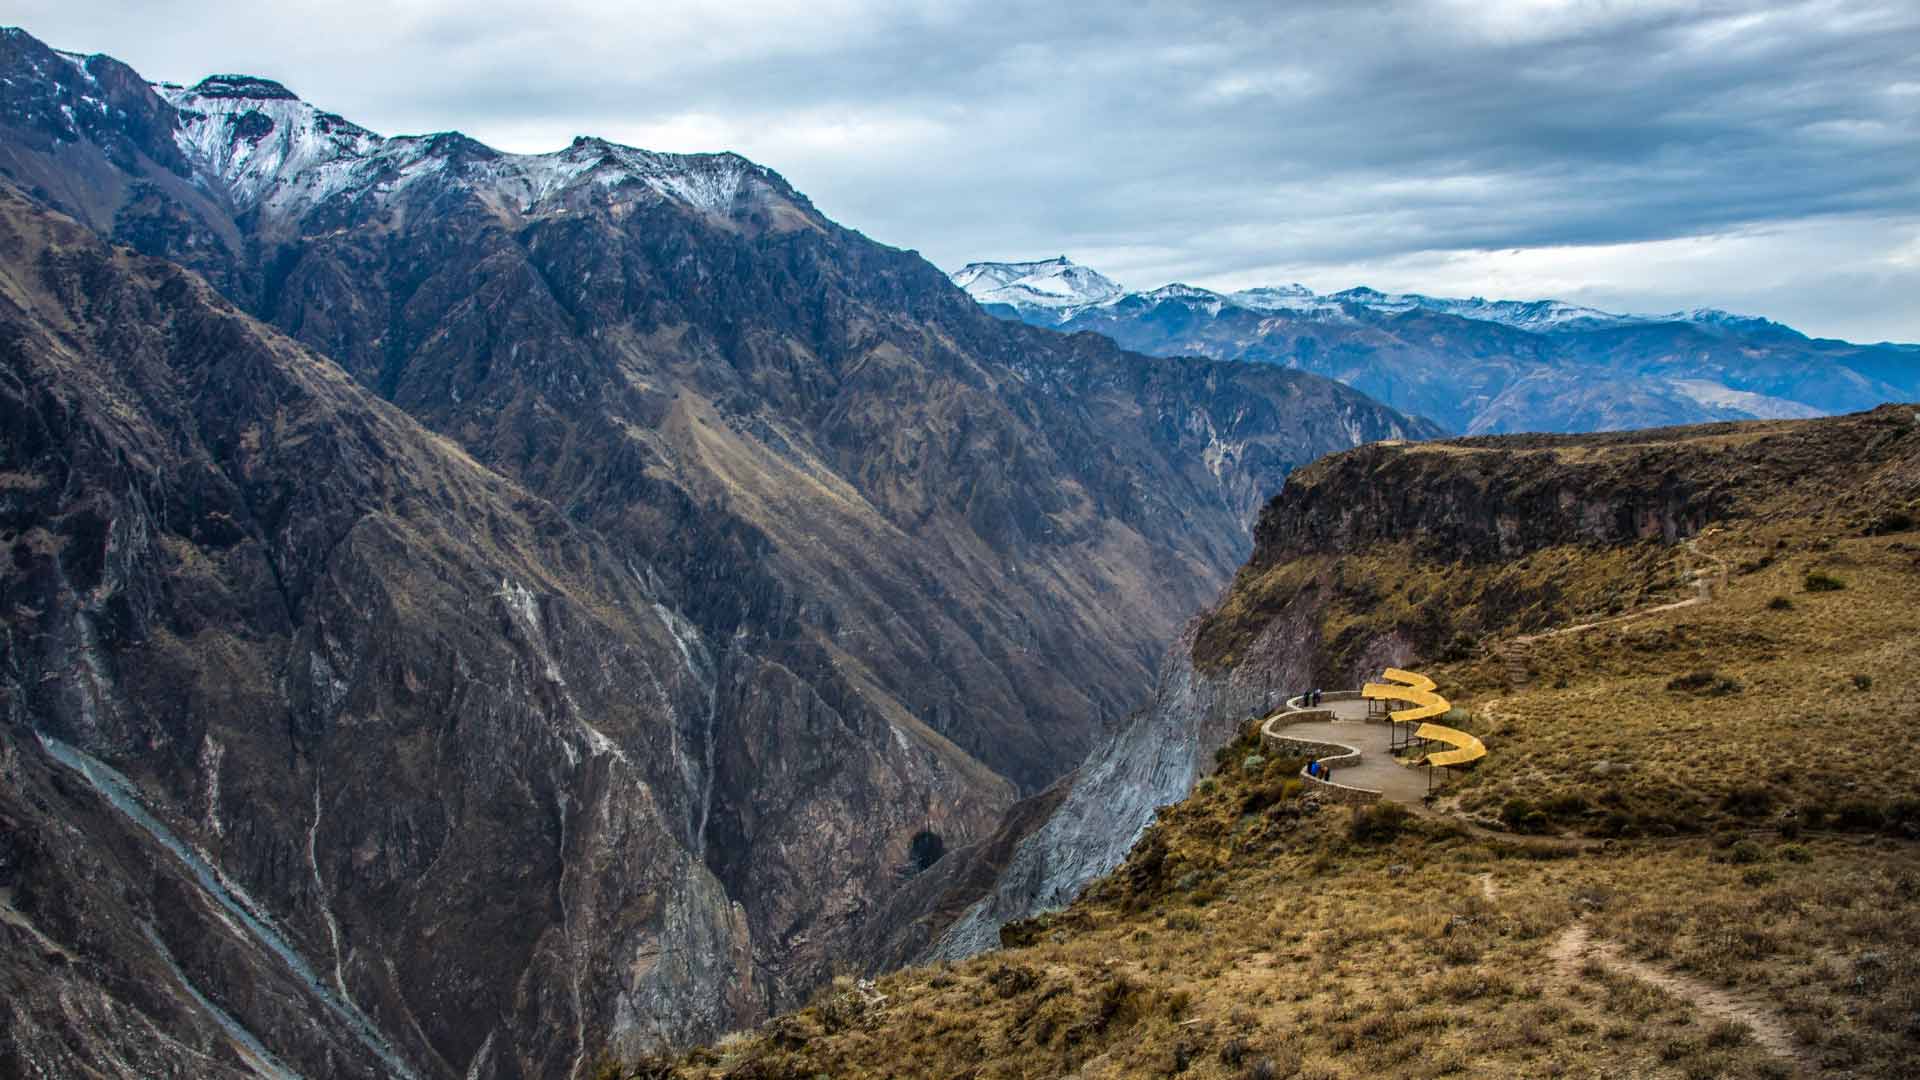 Colca Canyon landscape, Peru